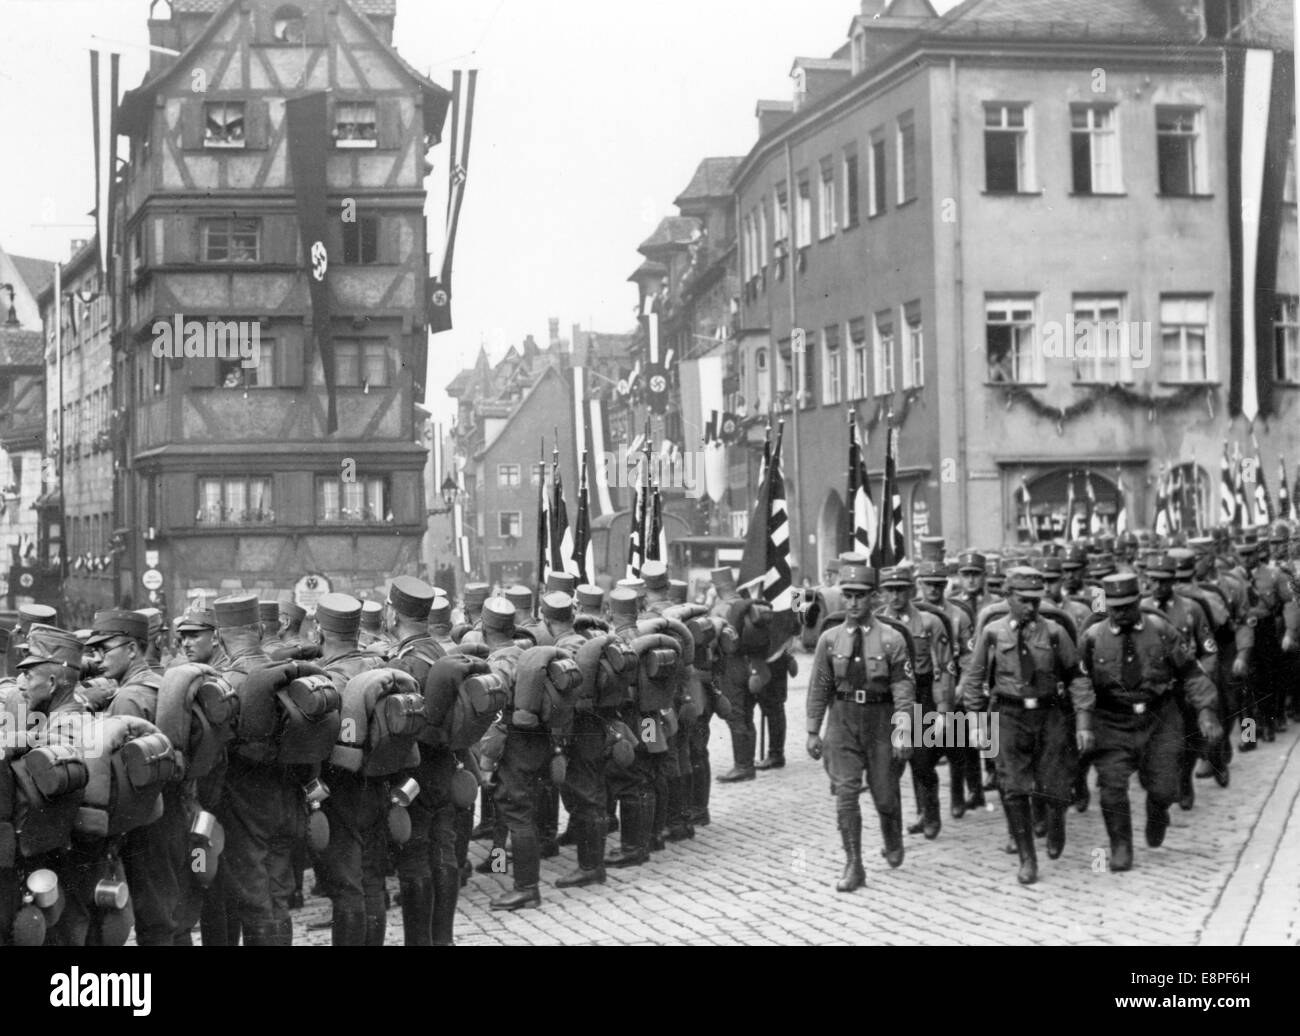 Nürnberger Rallye 1933 in Nürnberg - Mitglieder der SA (Sturmabteilung) marschieren durch die Straßen von Nürnberg. (Qualitätsmängel aufgrund der historischen Bildkopie) Fotoarchiv für Zeitgeschichtee – KEIN KABELDIENST – Stockfoto